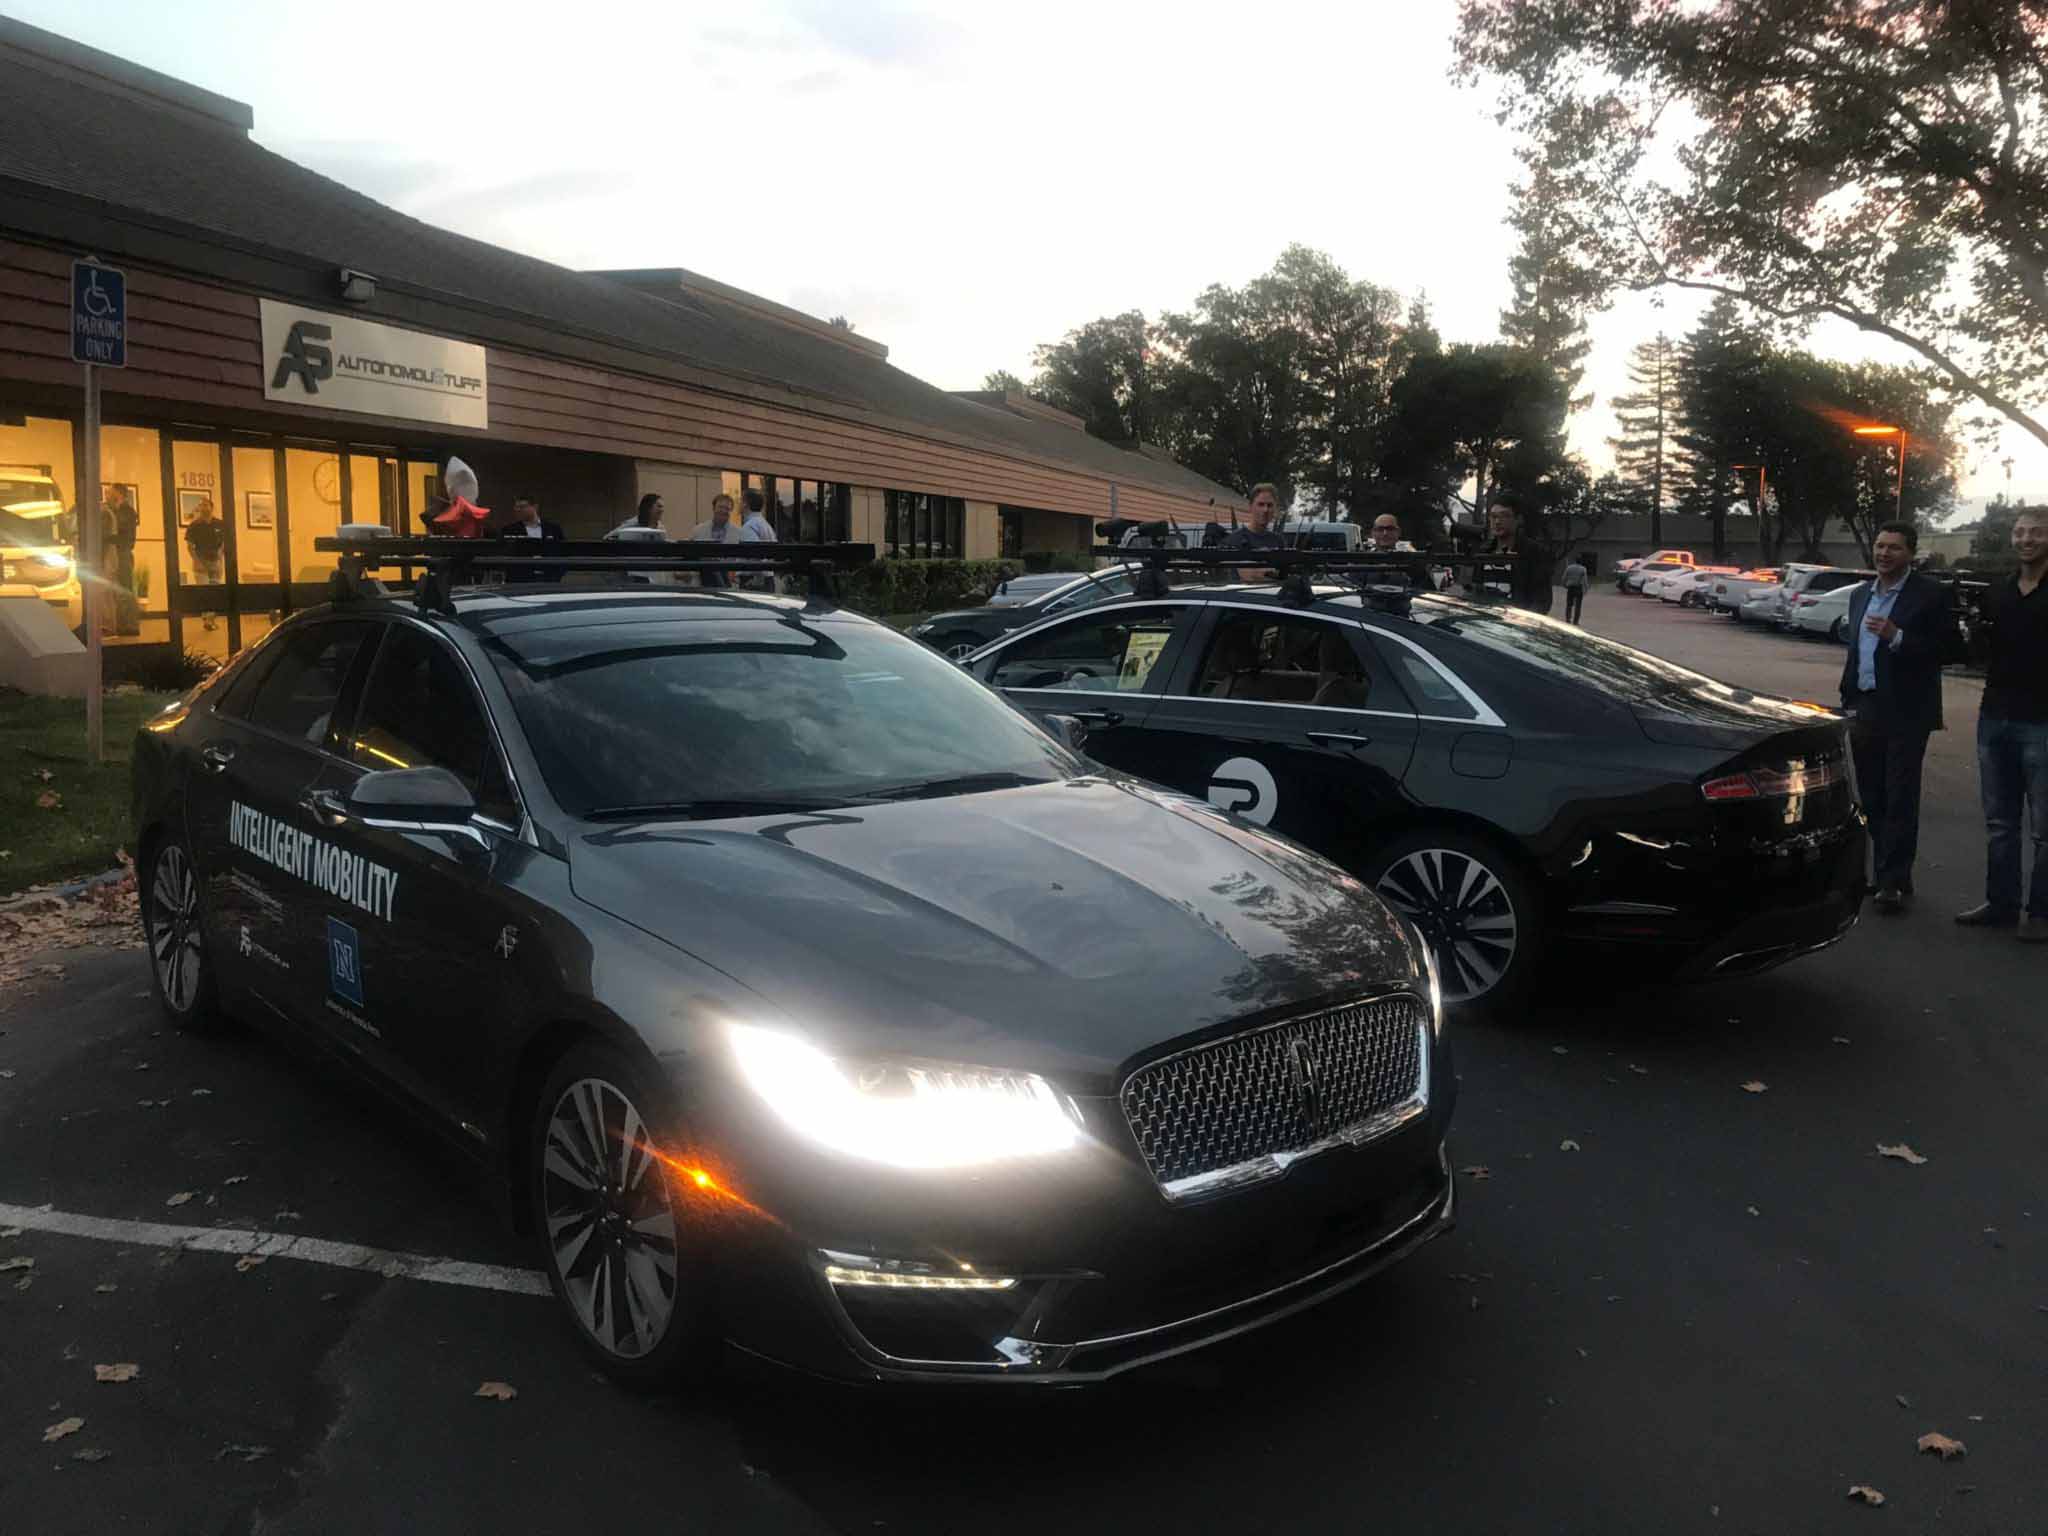 Two autonomous vehicles in parking lot